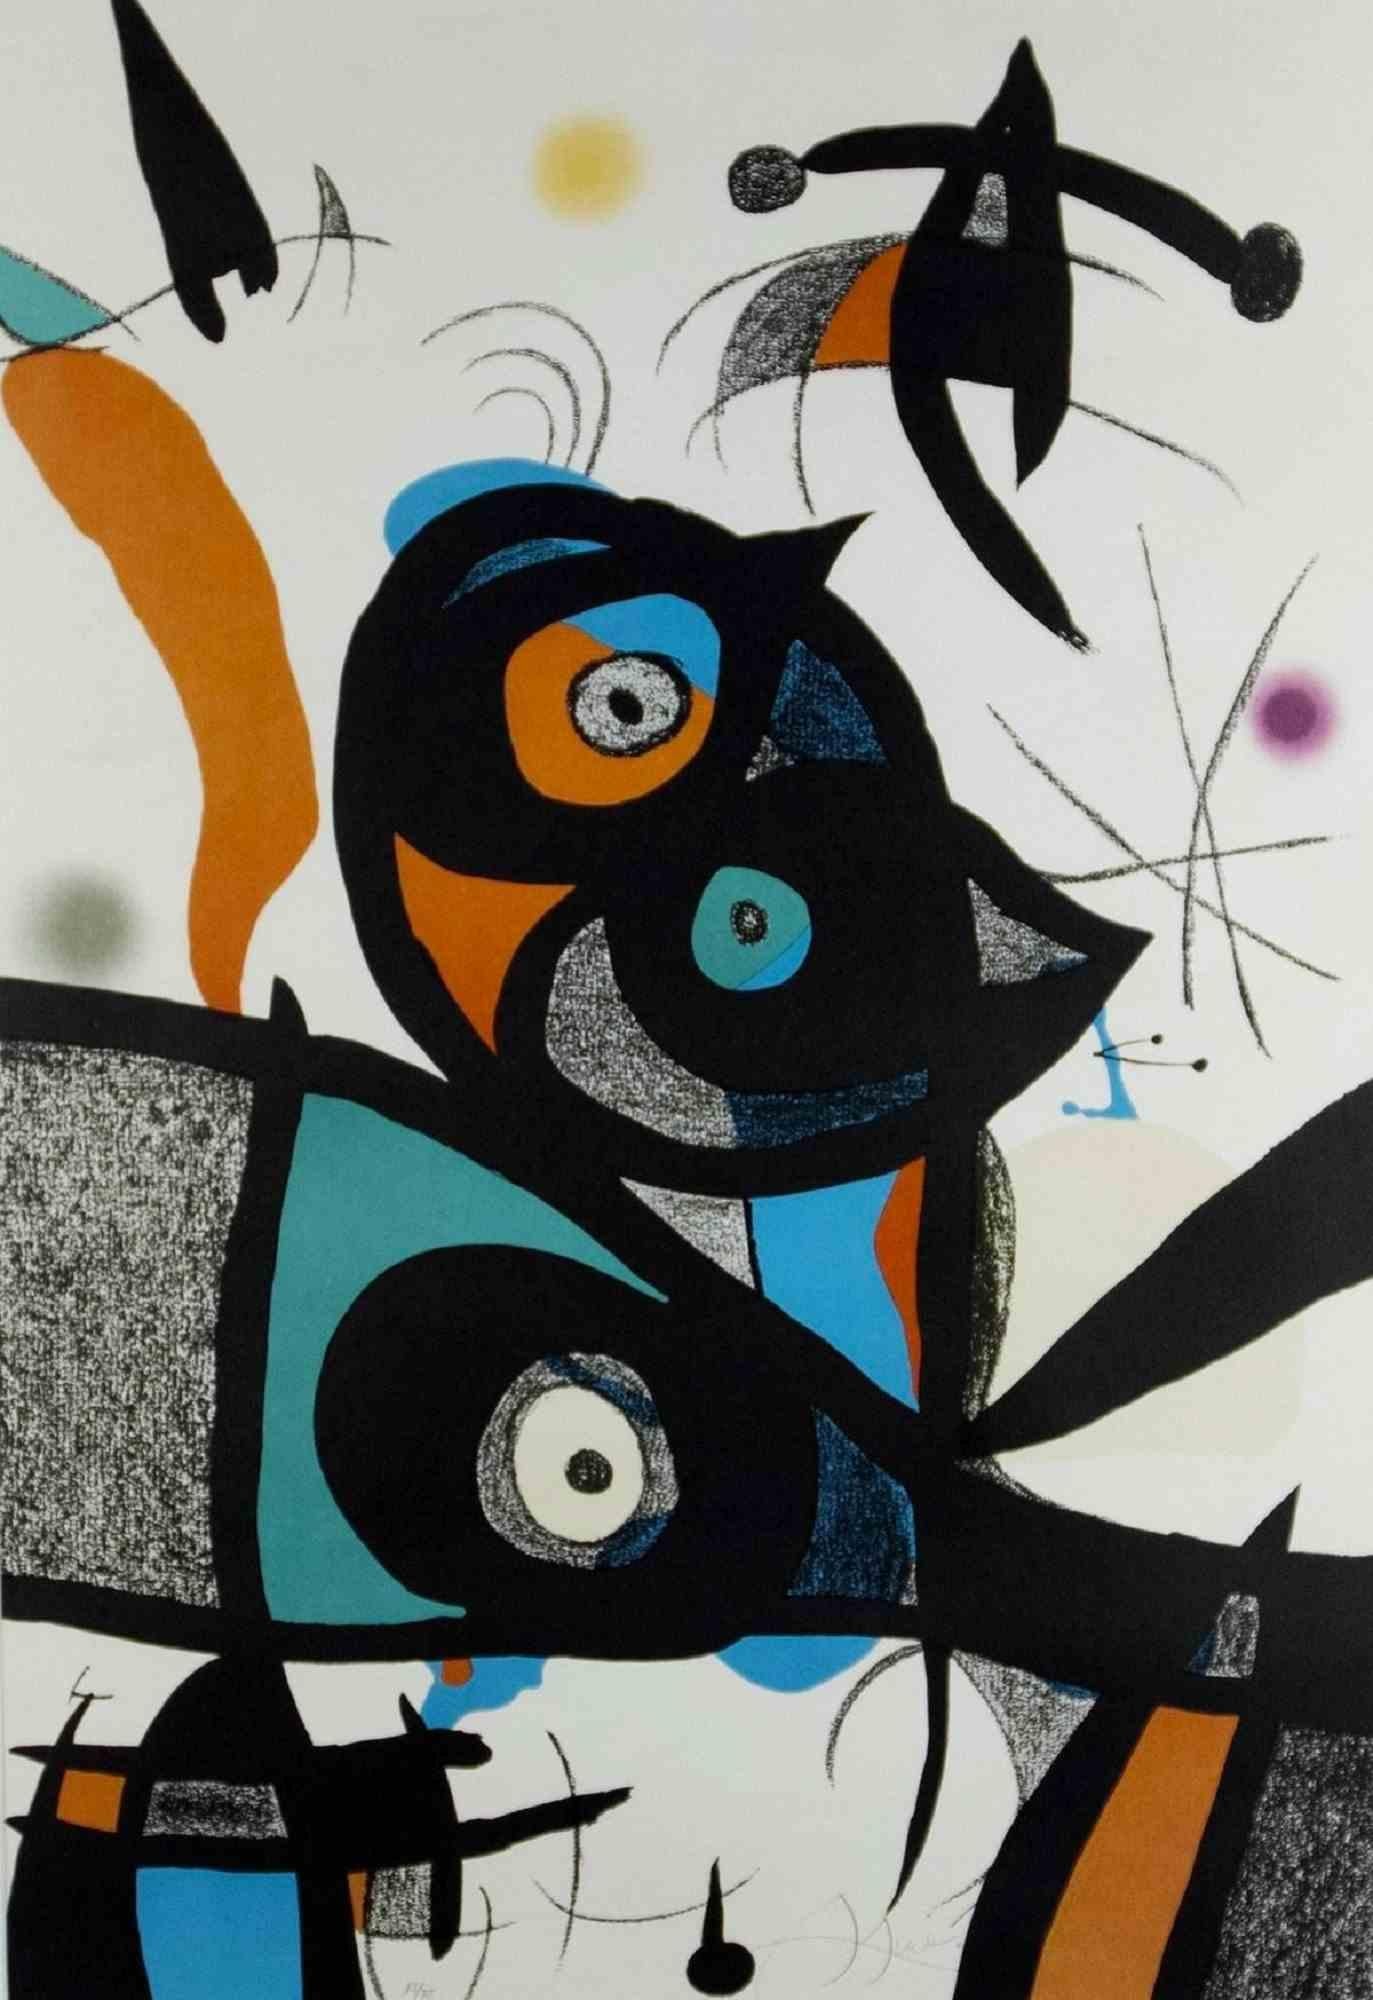 Joan Miró Abstract Print - Oda à Joan Mirò - Original Lithograph by J. Miró - 1973